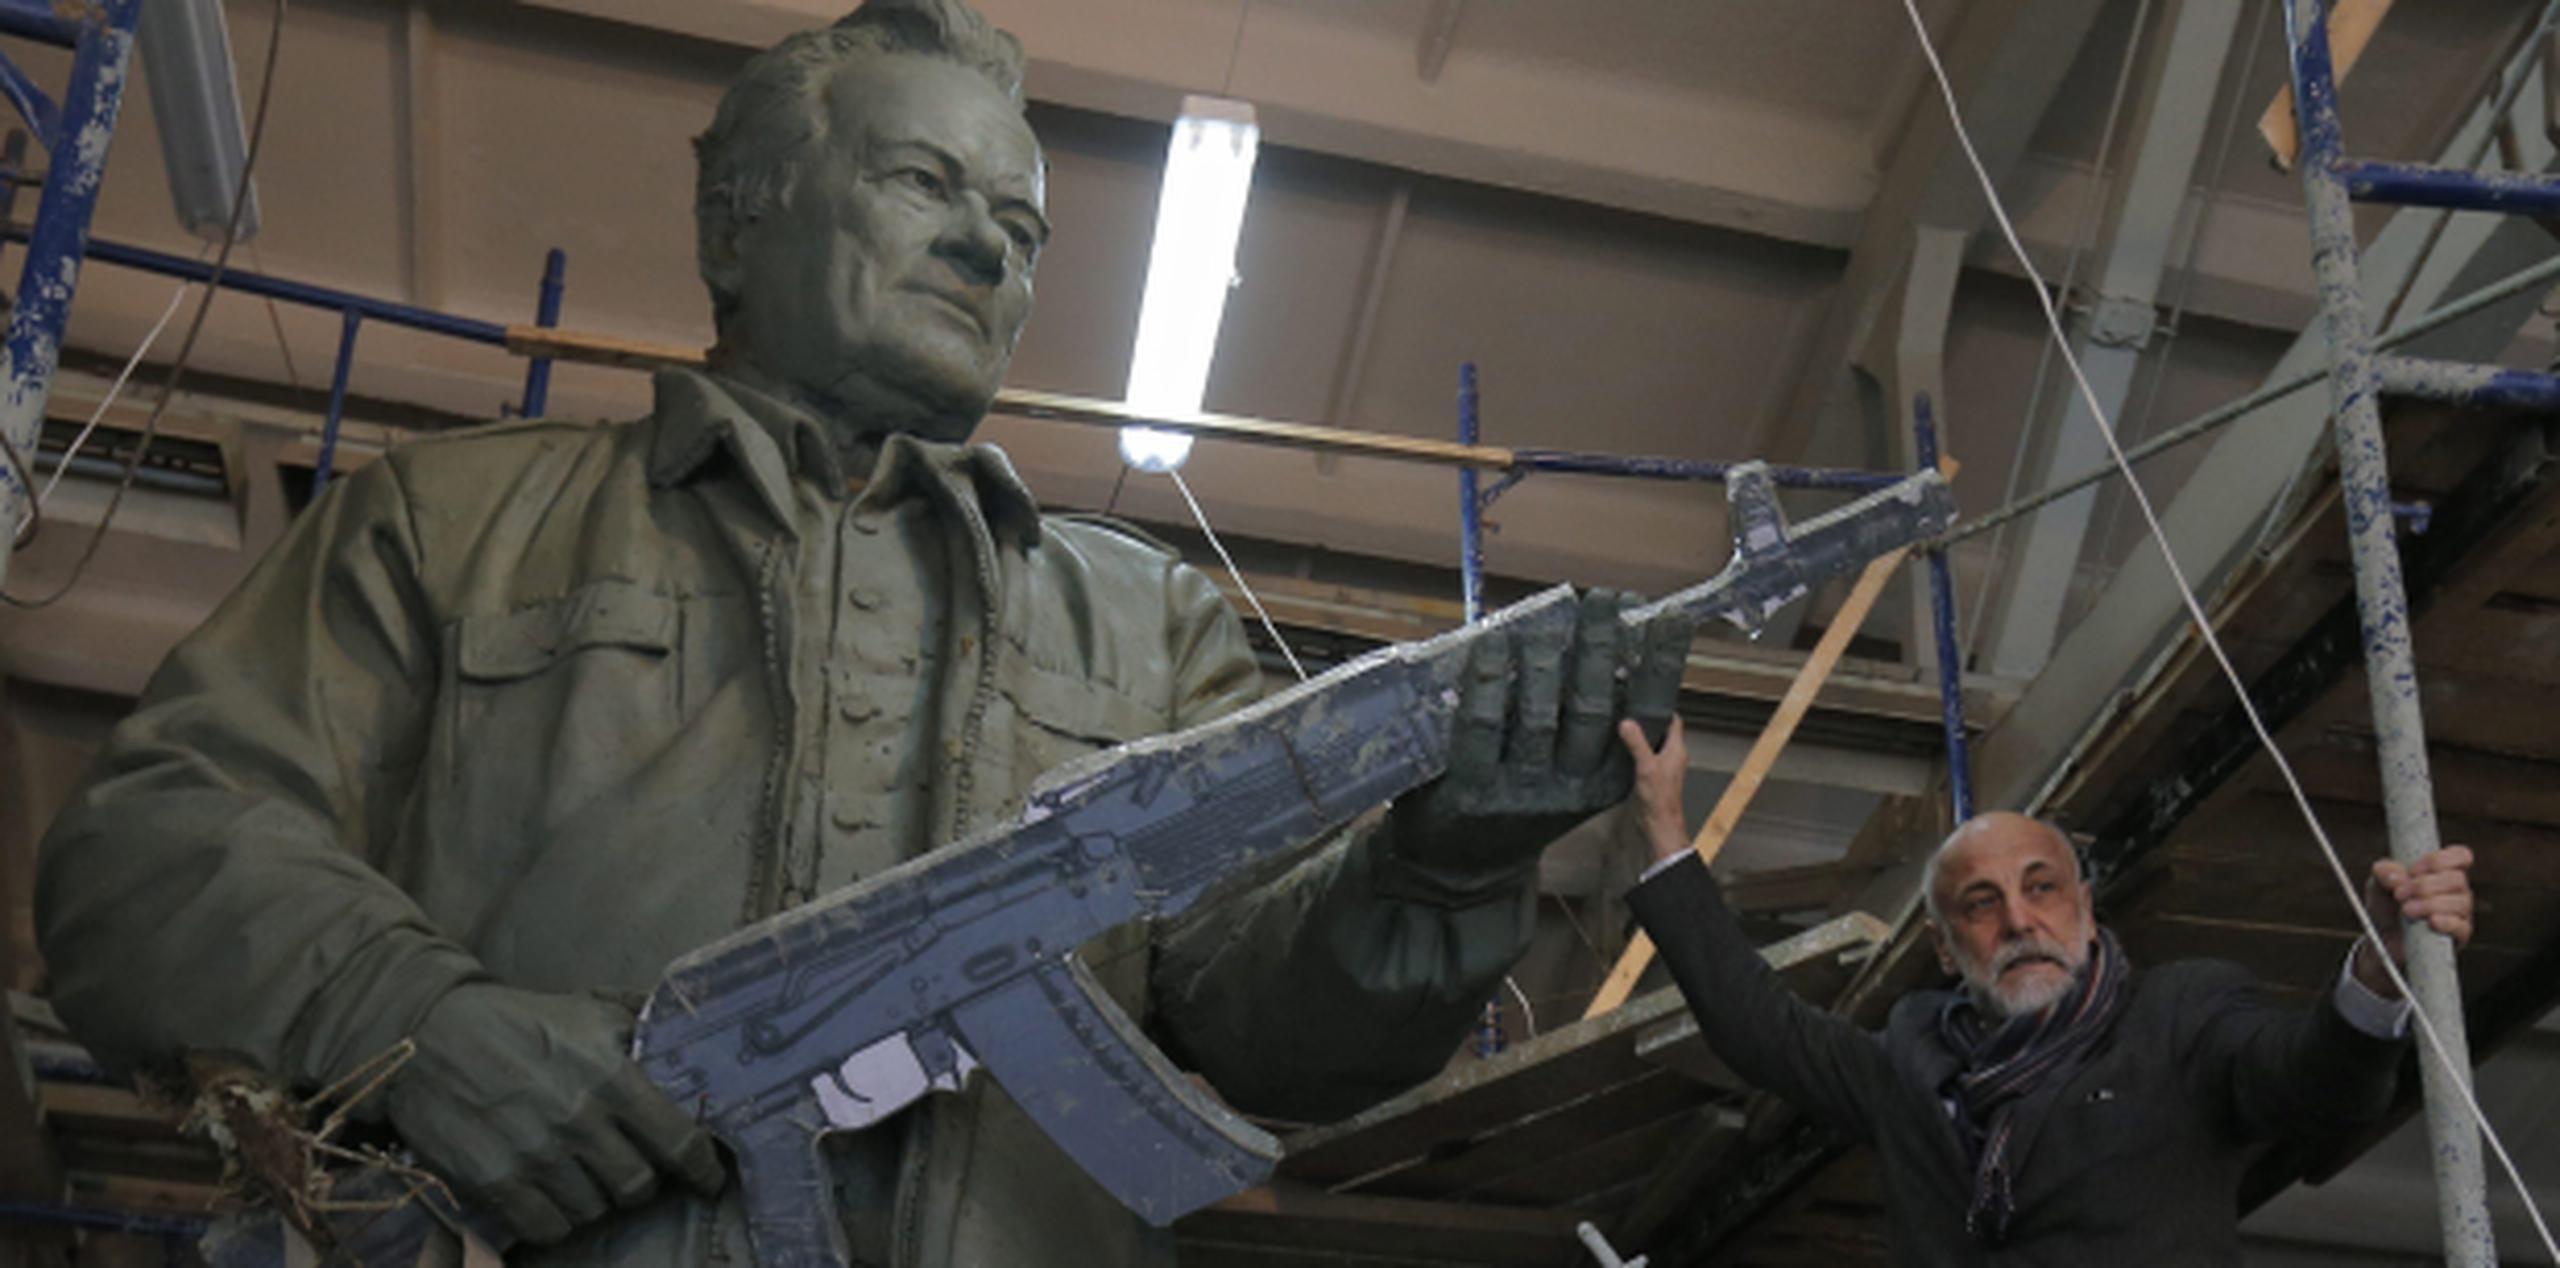 El escultor ruso Salaat Scherbakov trabajó la estatua en honor a Mijaíl Kaláshnikov, inventor del fusil AK-47, que aparecerá junto a una representación de San Miguel Arcángel en Moscú. (EFE / Sergei Ilnitsky)